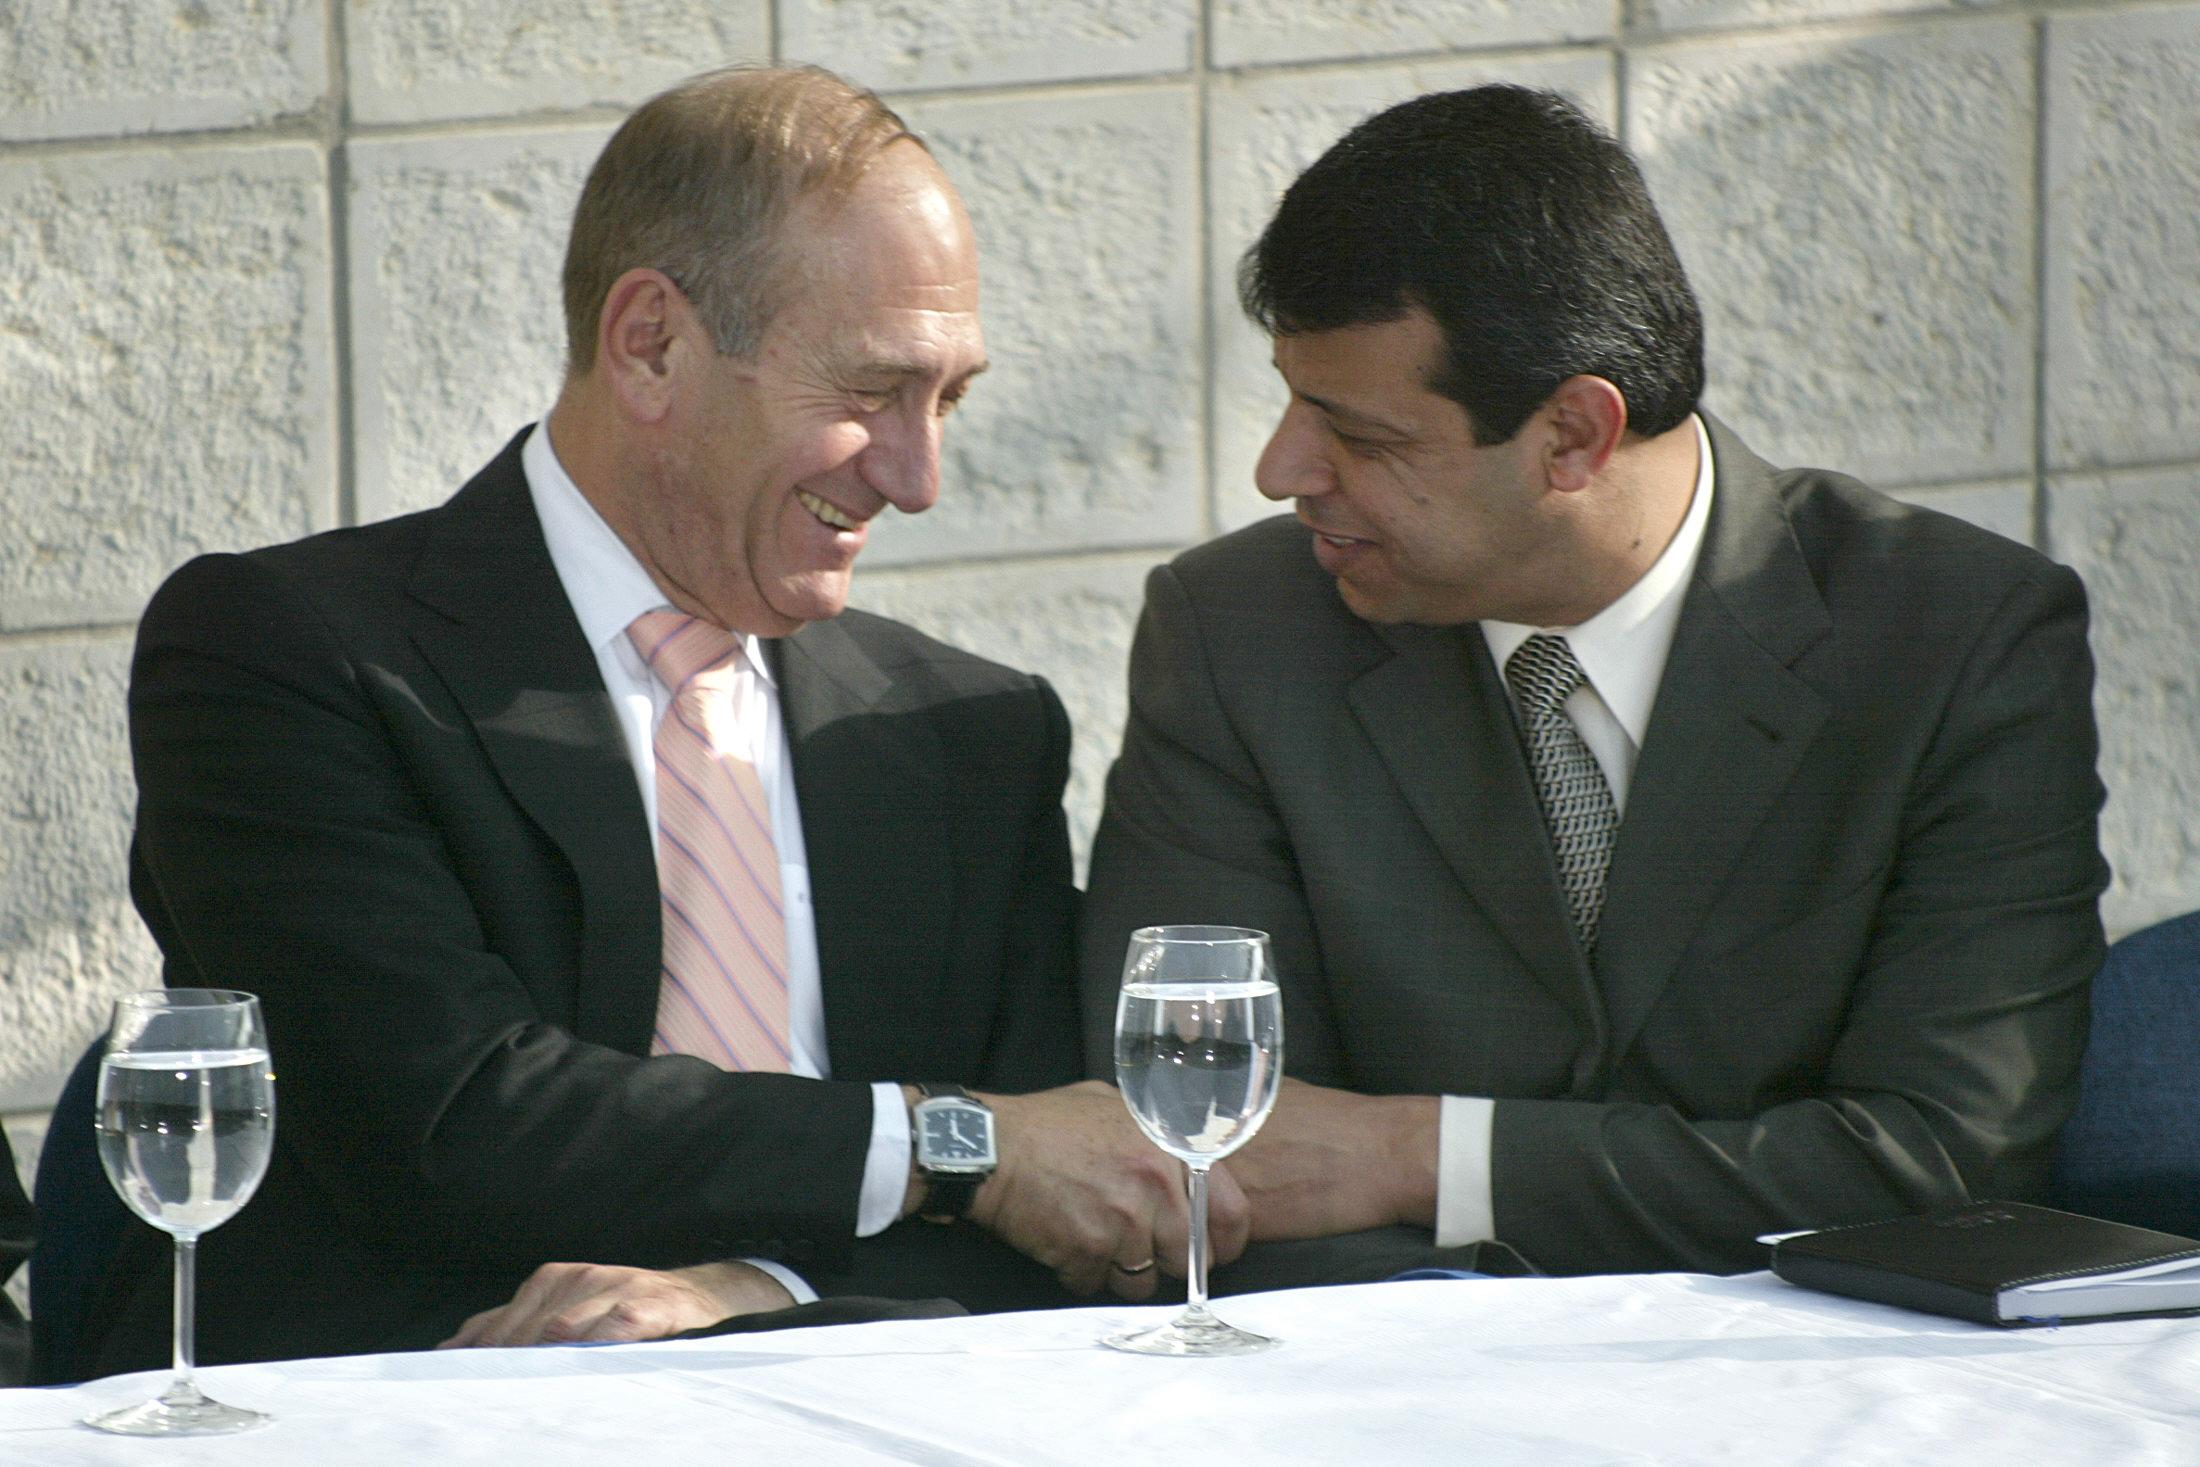 كانت إدارة جورج بوش معجبة بمحمد دحلان المنفتح في علاقاته مع قادة الاحتلال الإسرائيلي (مناحيم كاهانا/ أ.ف.ب)